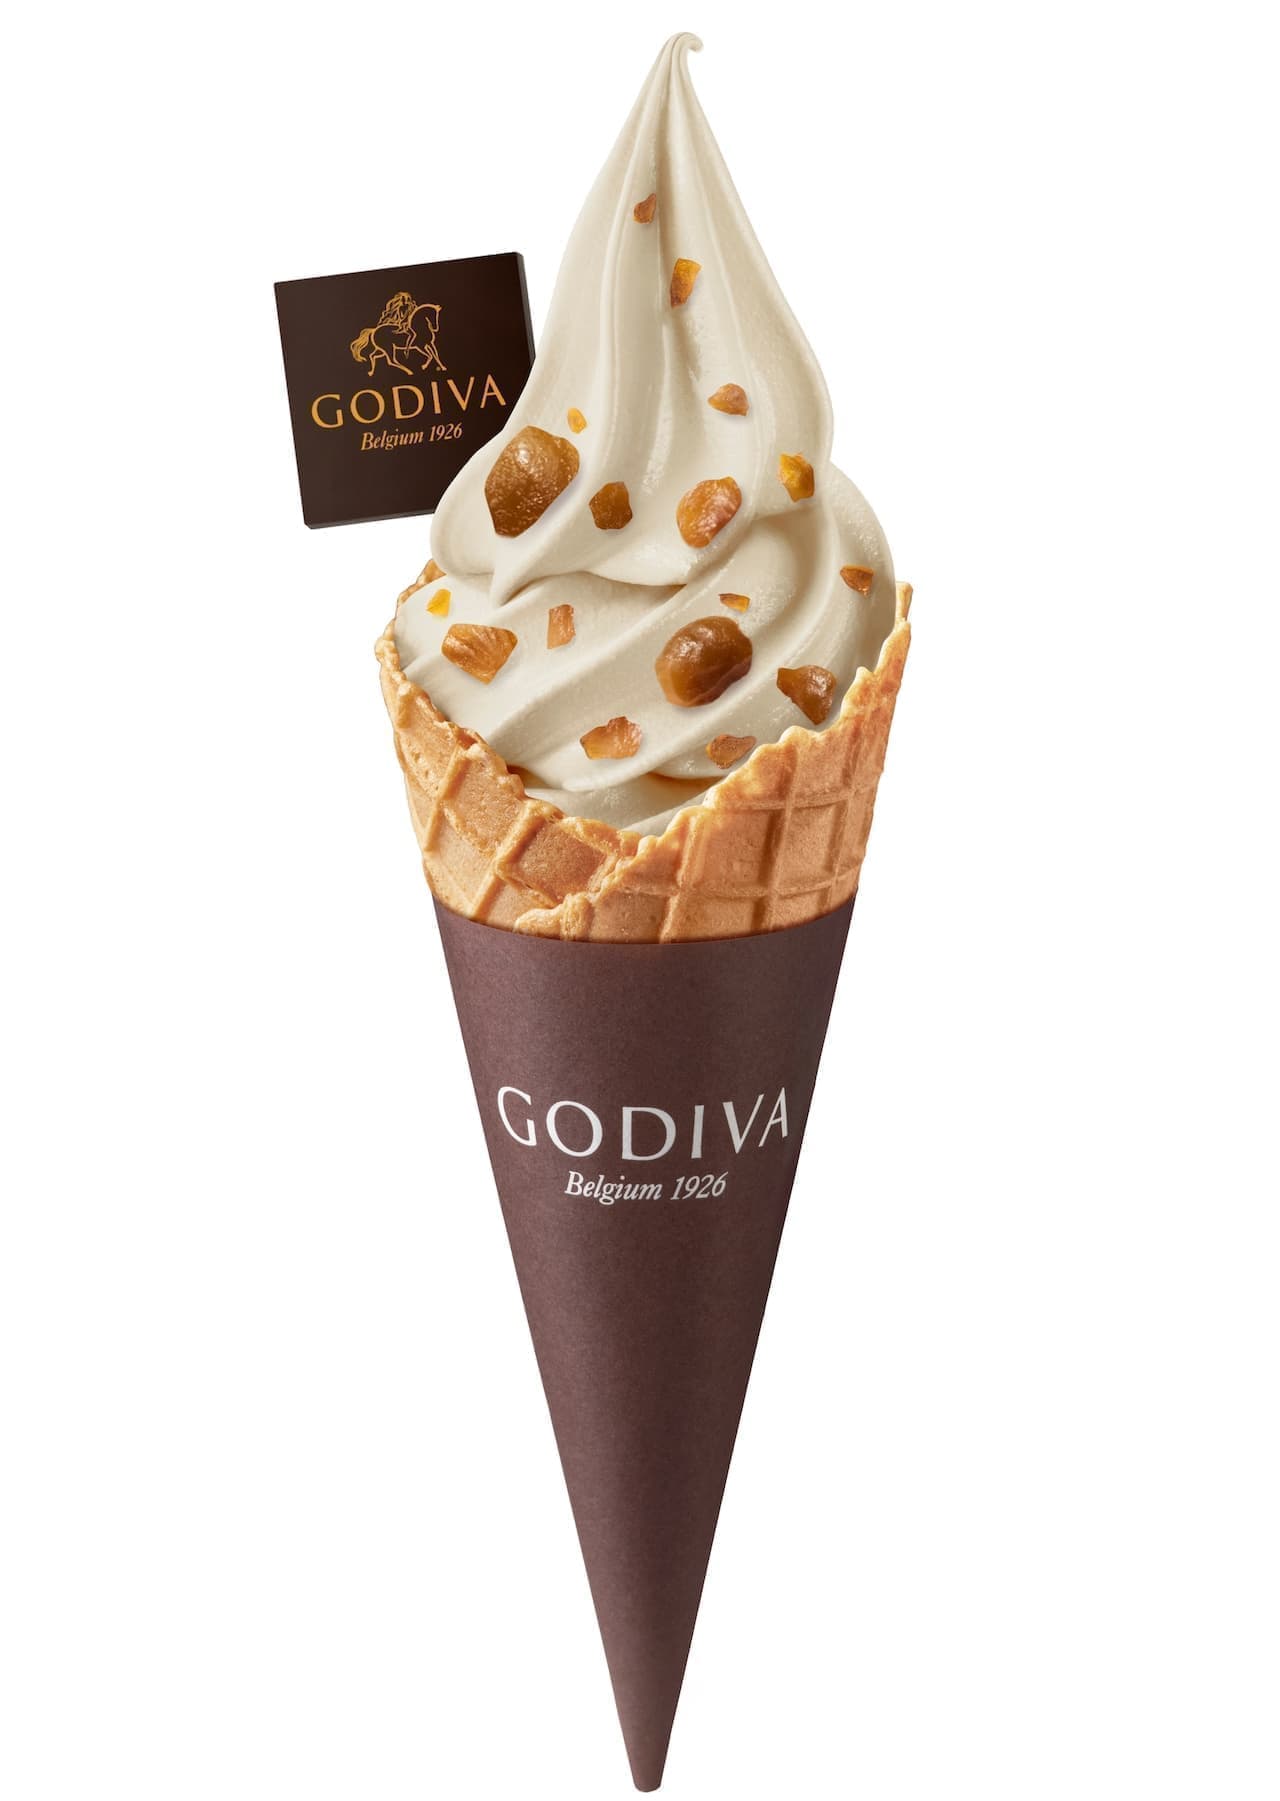 Godiva "Mashed marron soft serve ice cream